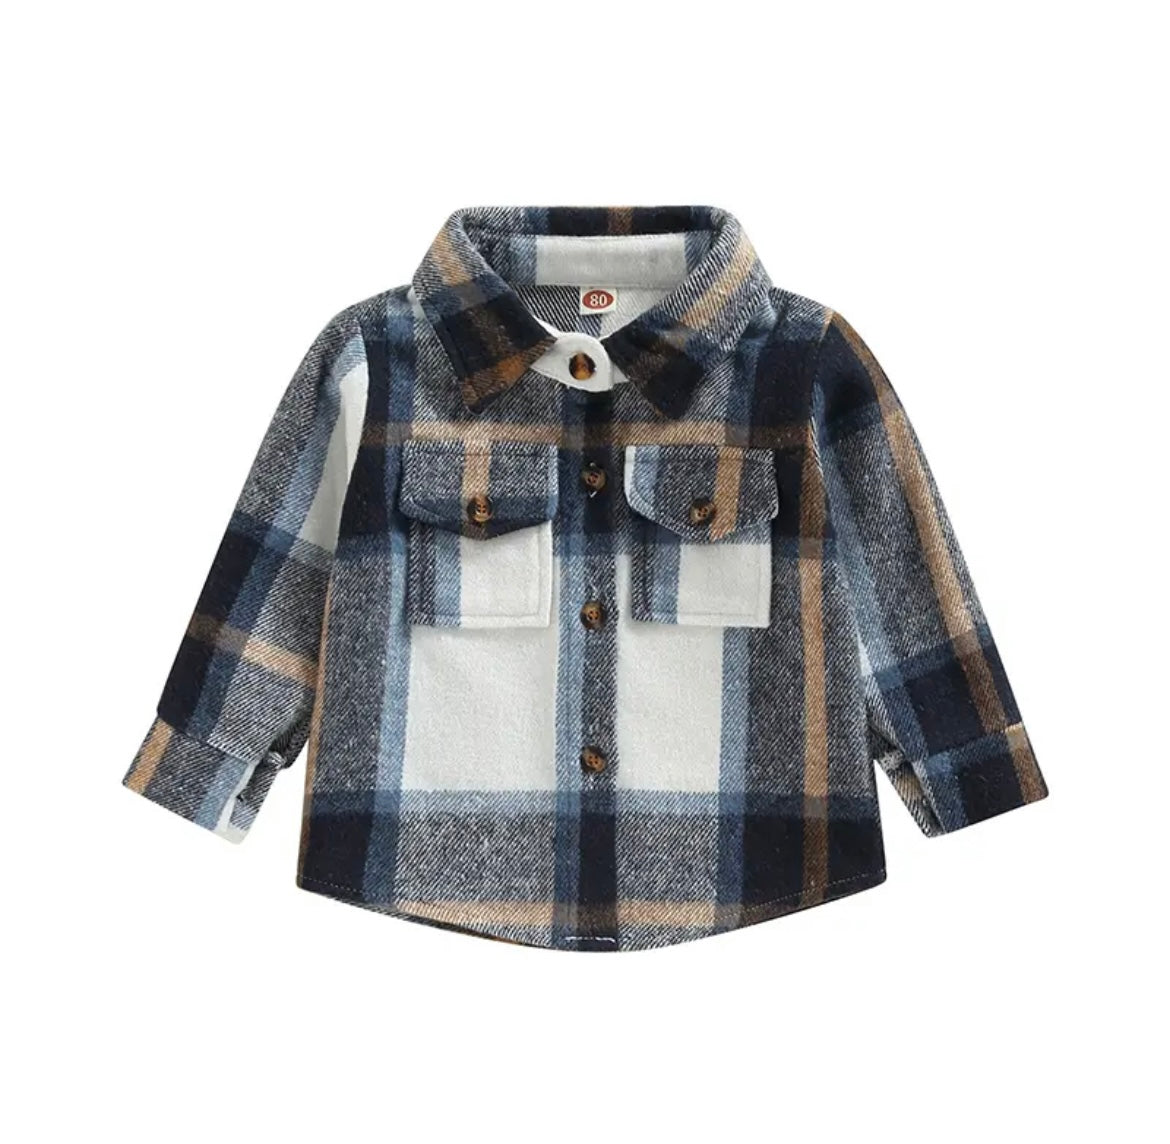 Toddler & Baby Plaid Shirt Spring Jacket